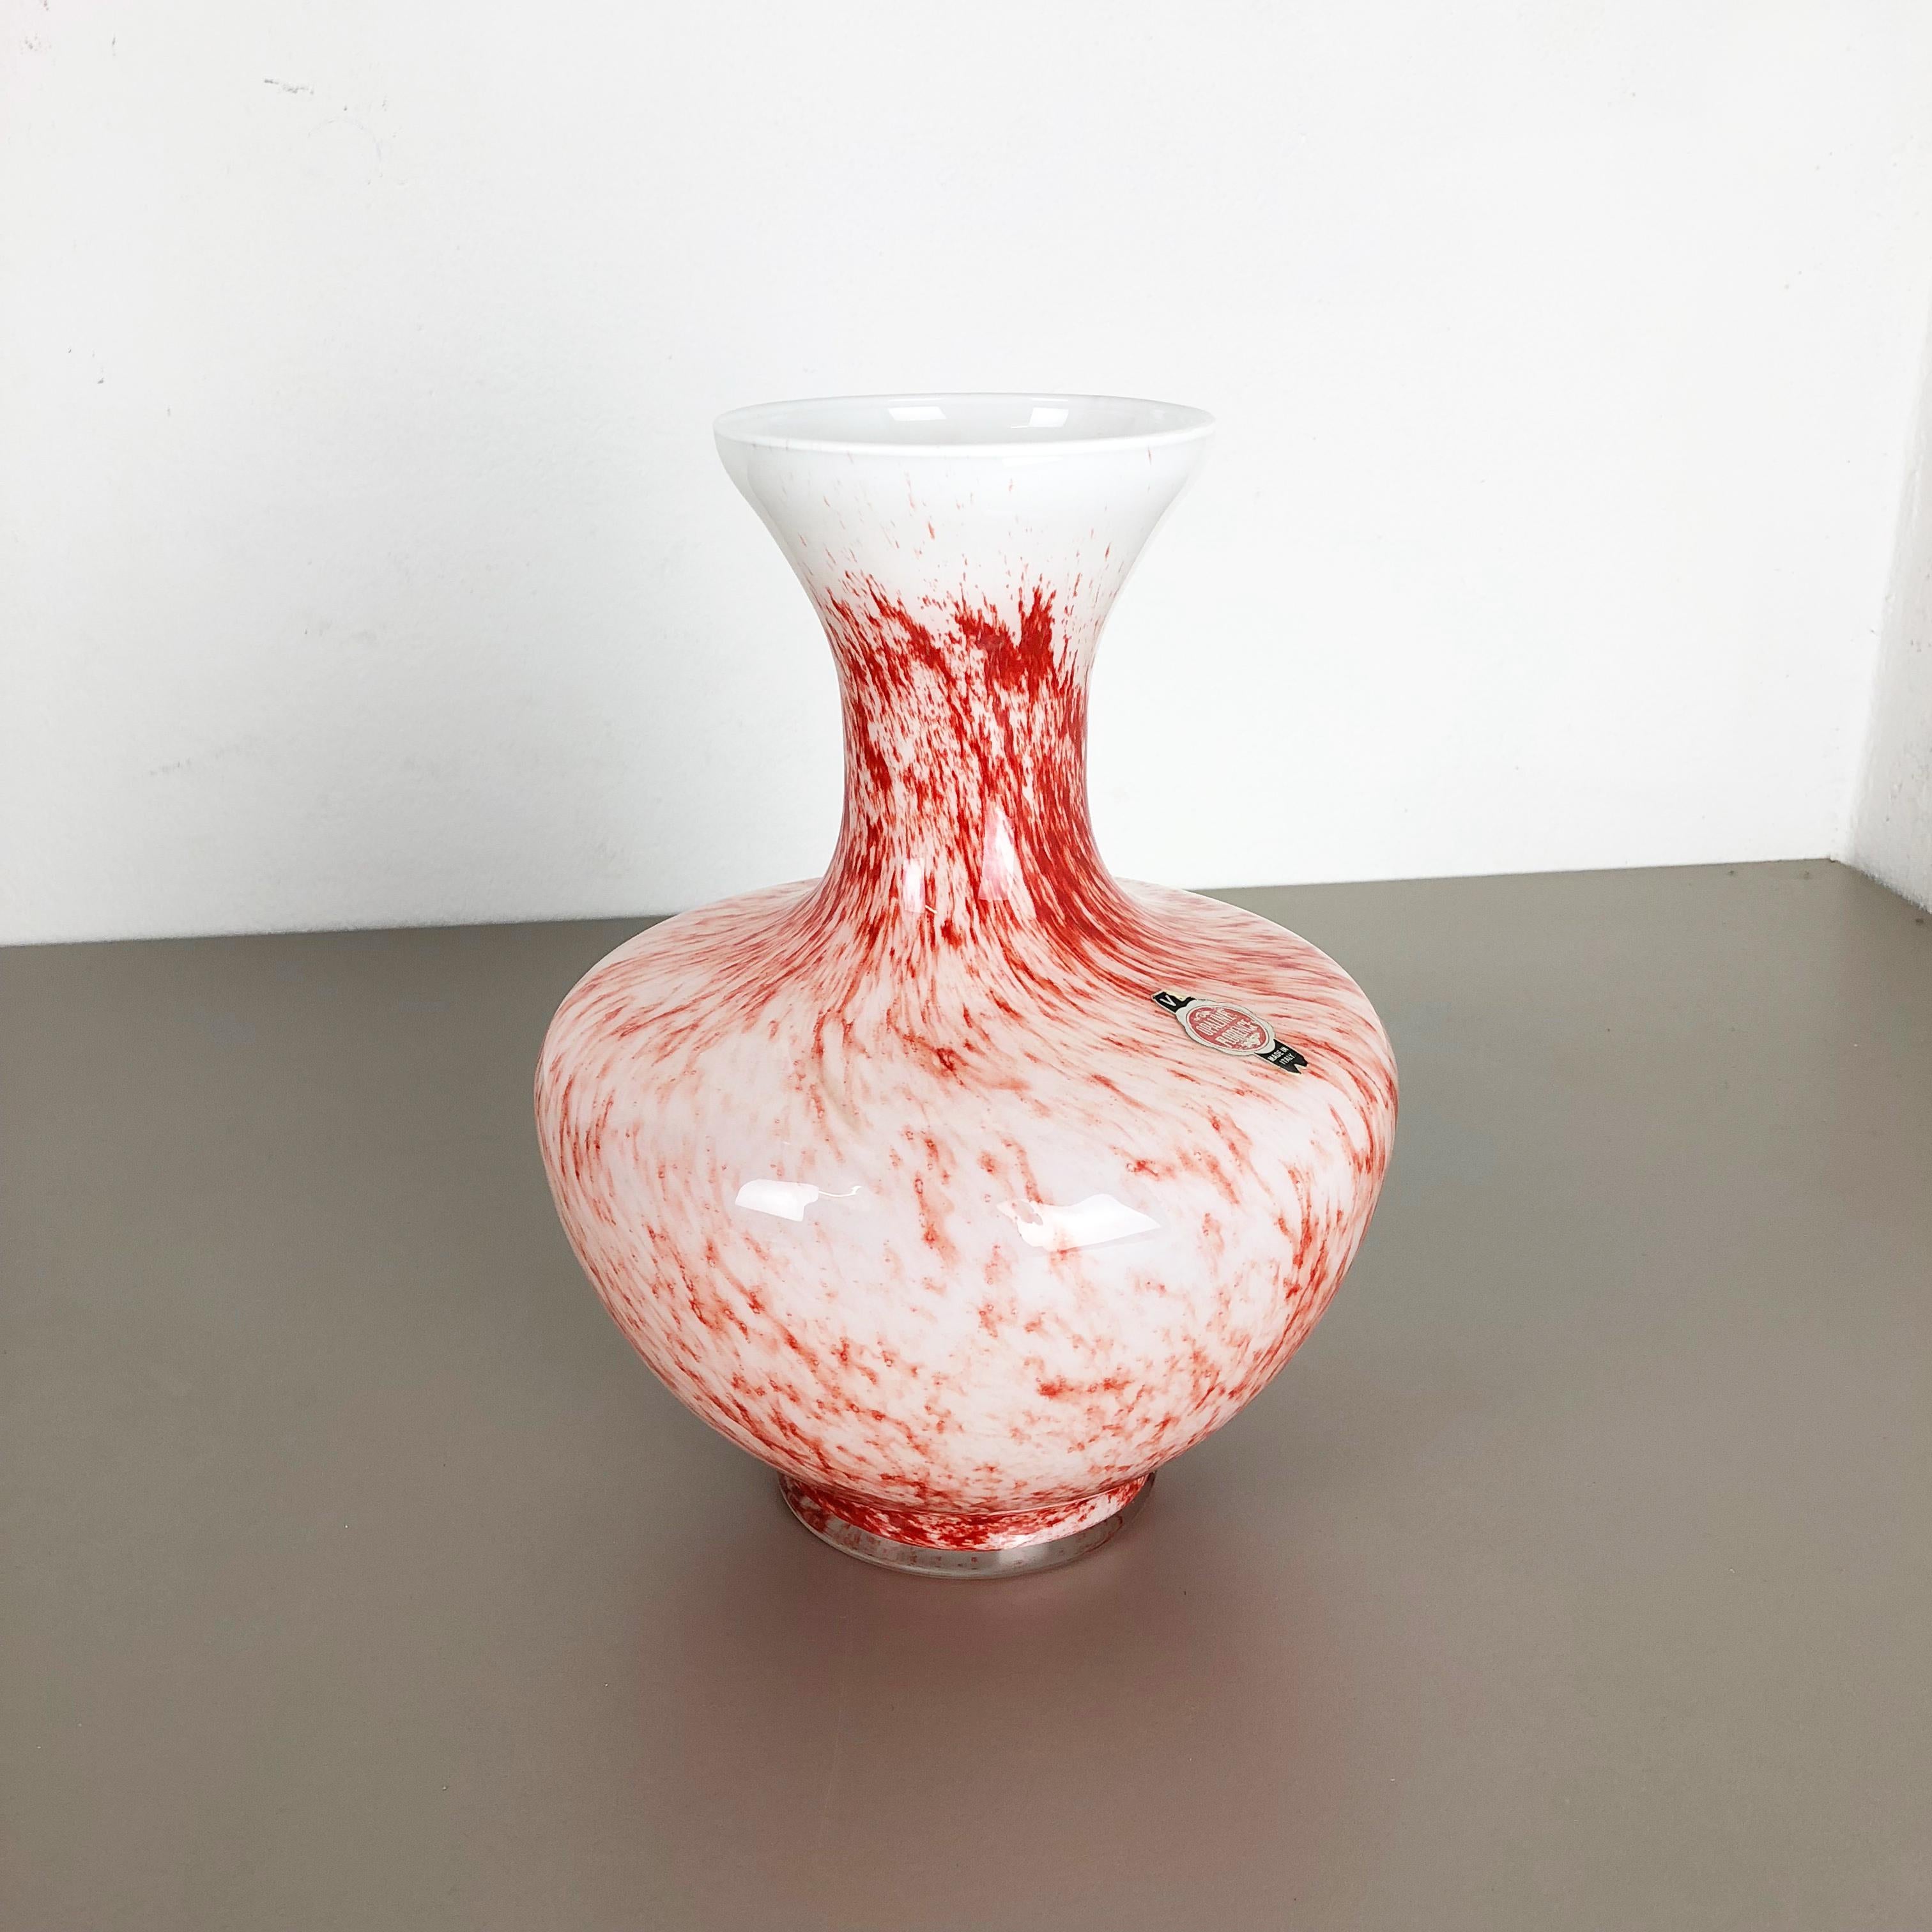 Article :

Vase Pop Art


Producteur :

Opaline, Florence


Décennie :

1970s


Vase original vintage des années 1970, soufflé à la main, de style Pop Art, fabriqué en Italie par Opaline Florence. Fabriqué en verre opale italien de haute